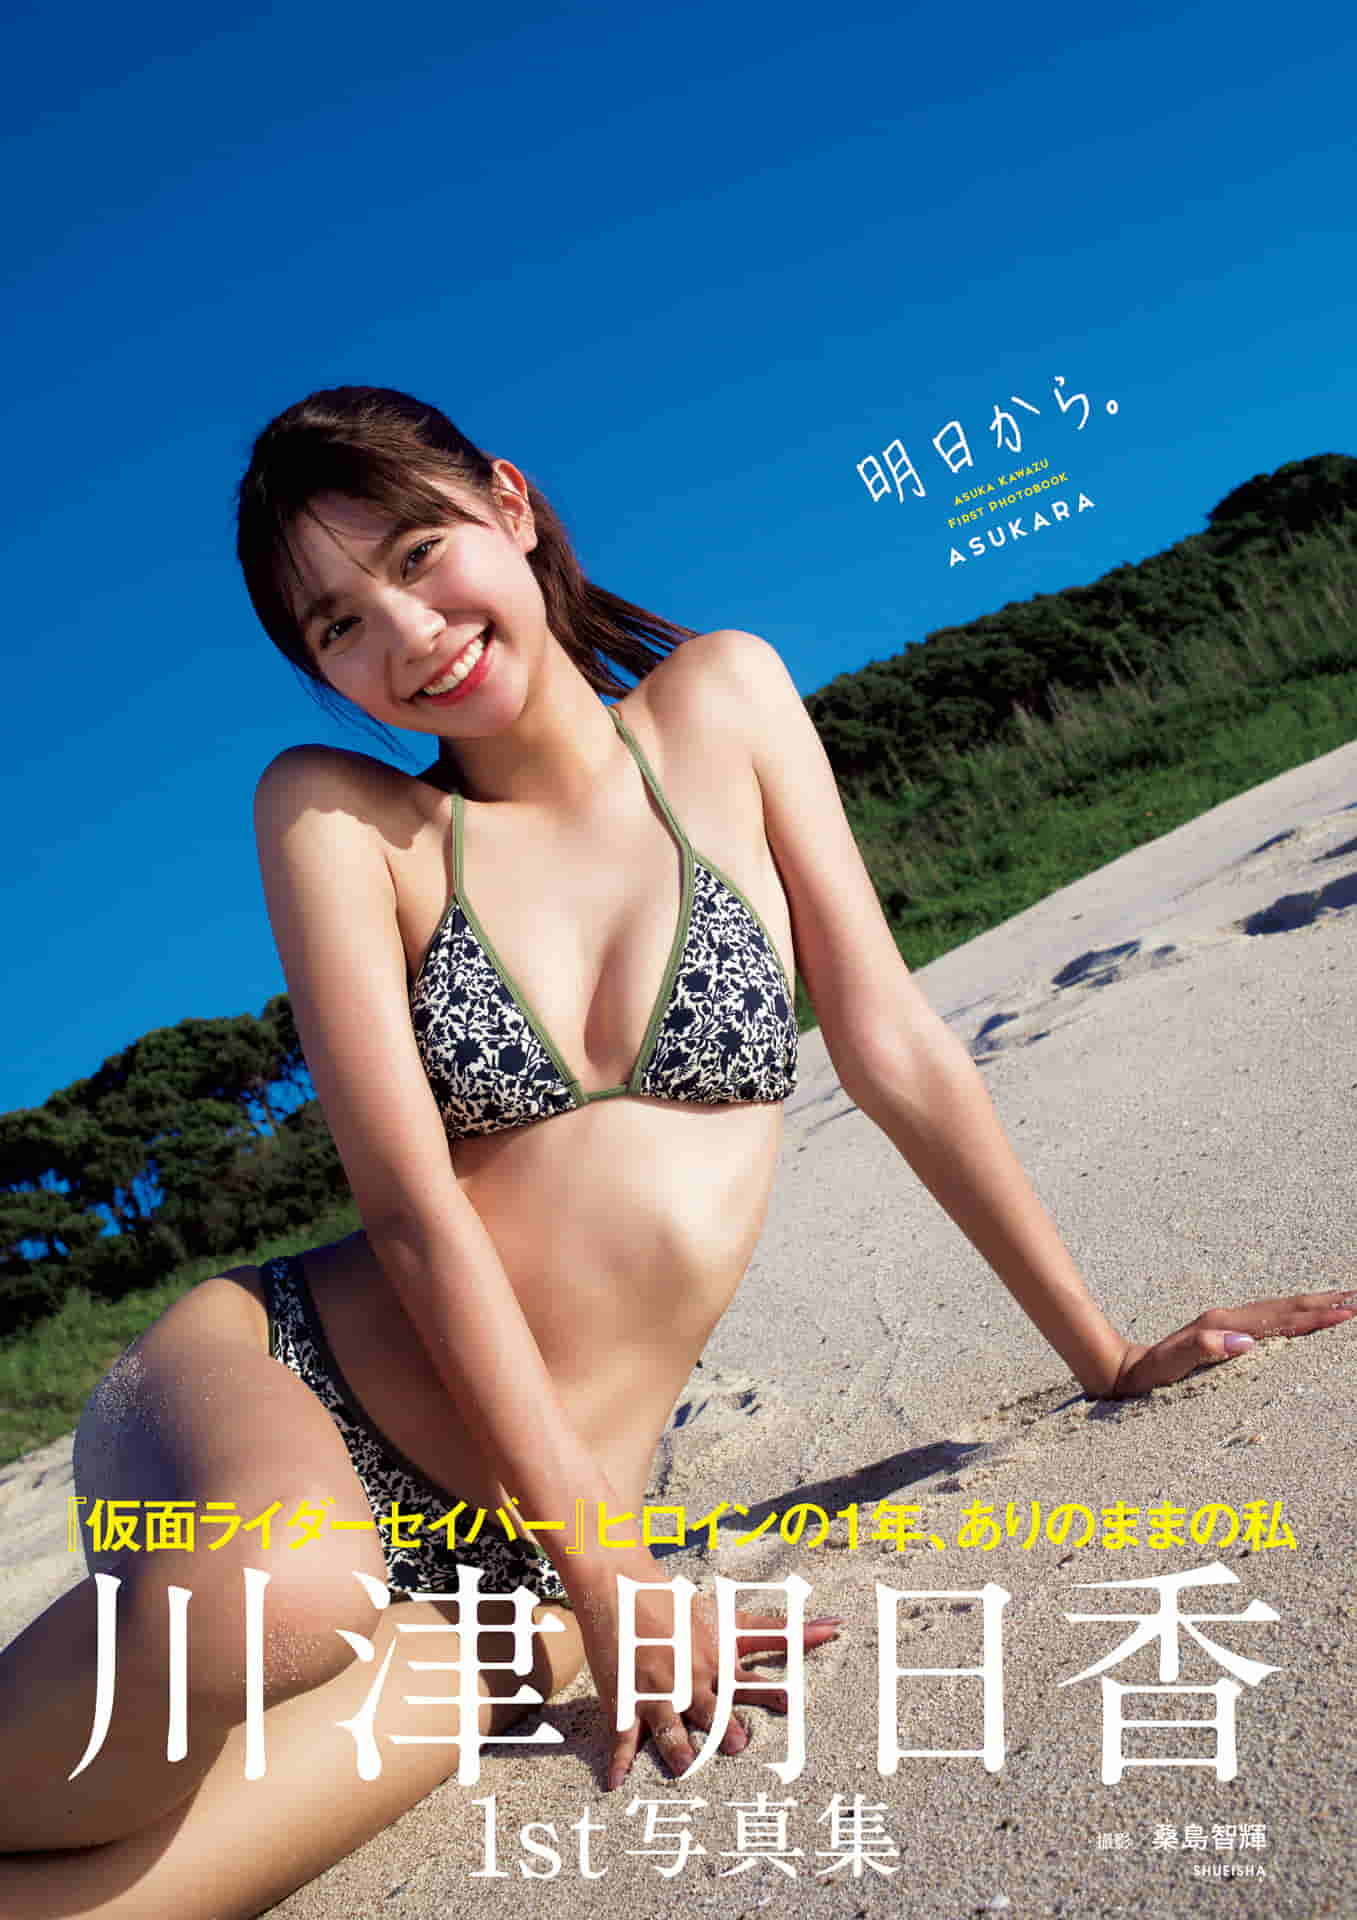 Kawazu Asuka Fast Photobook "Tomorrow から. 』